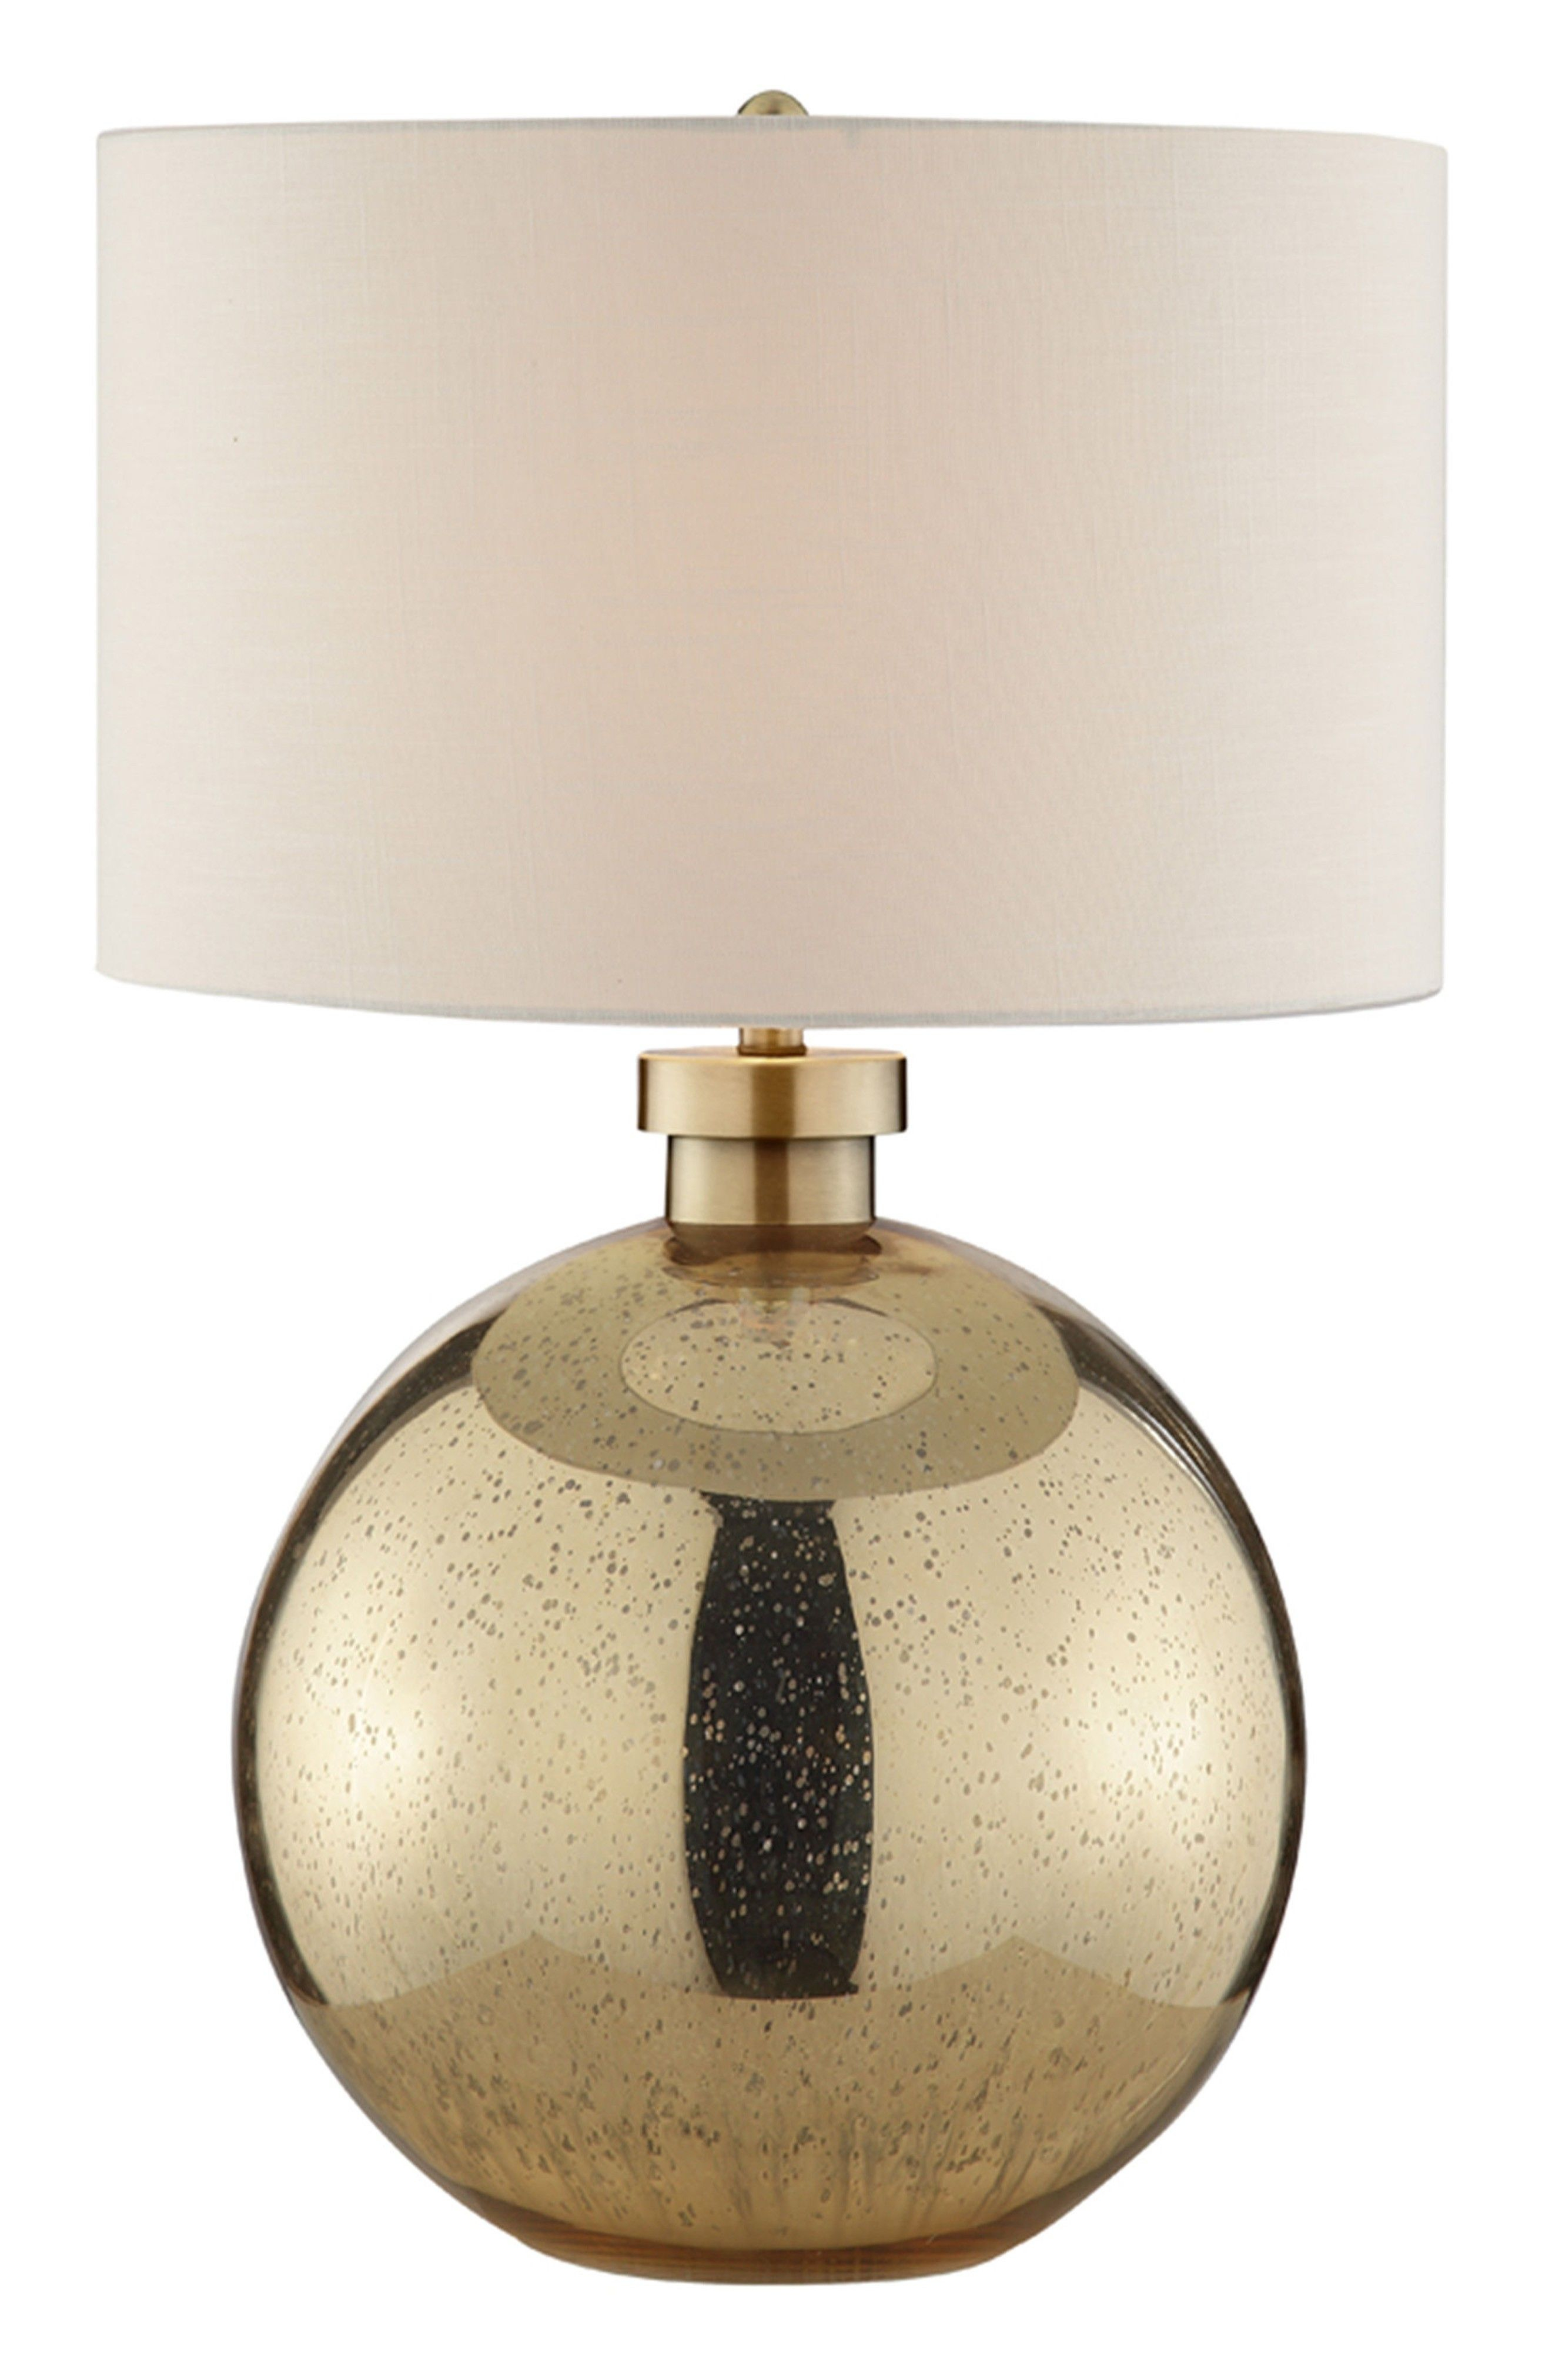 Gold Ball Lampe Nachttisch Leuchten Silber Crackle Lampe throughout proportions 2640 X 4048